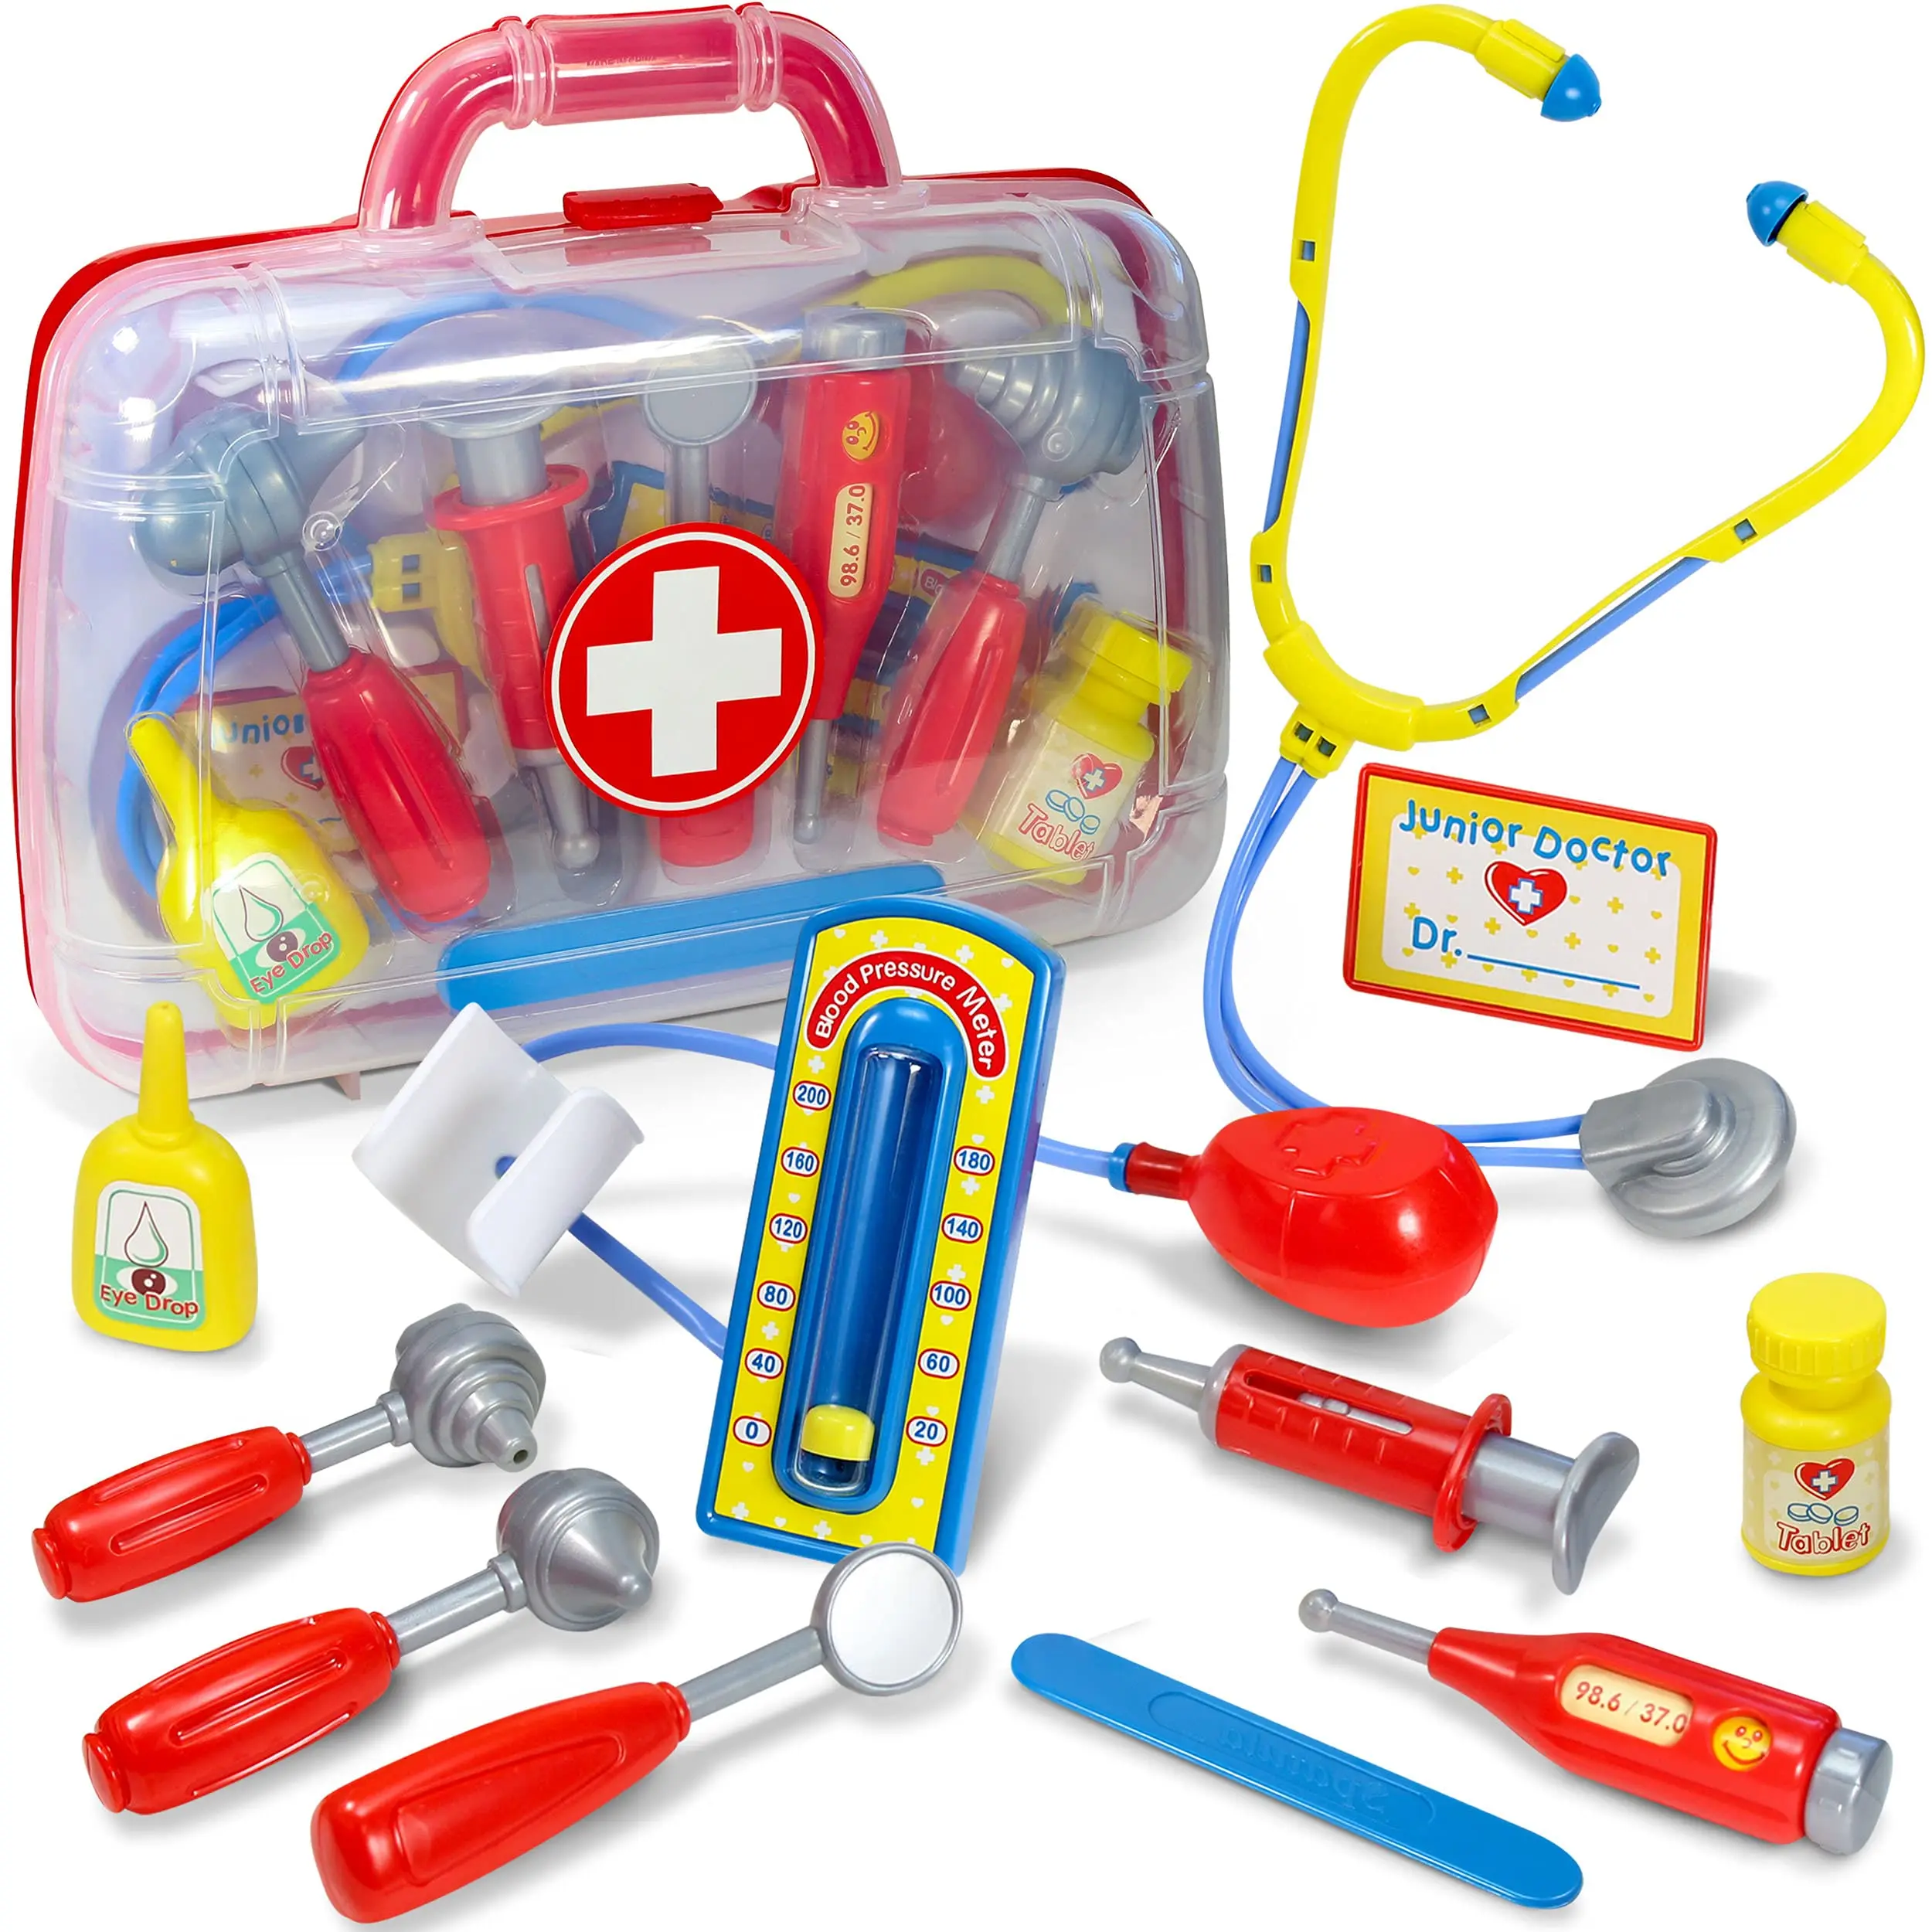 elementos para jugar al doctor - Cómo explicar a un niño que es un doctor